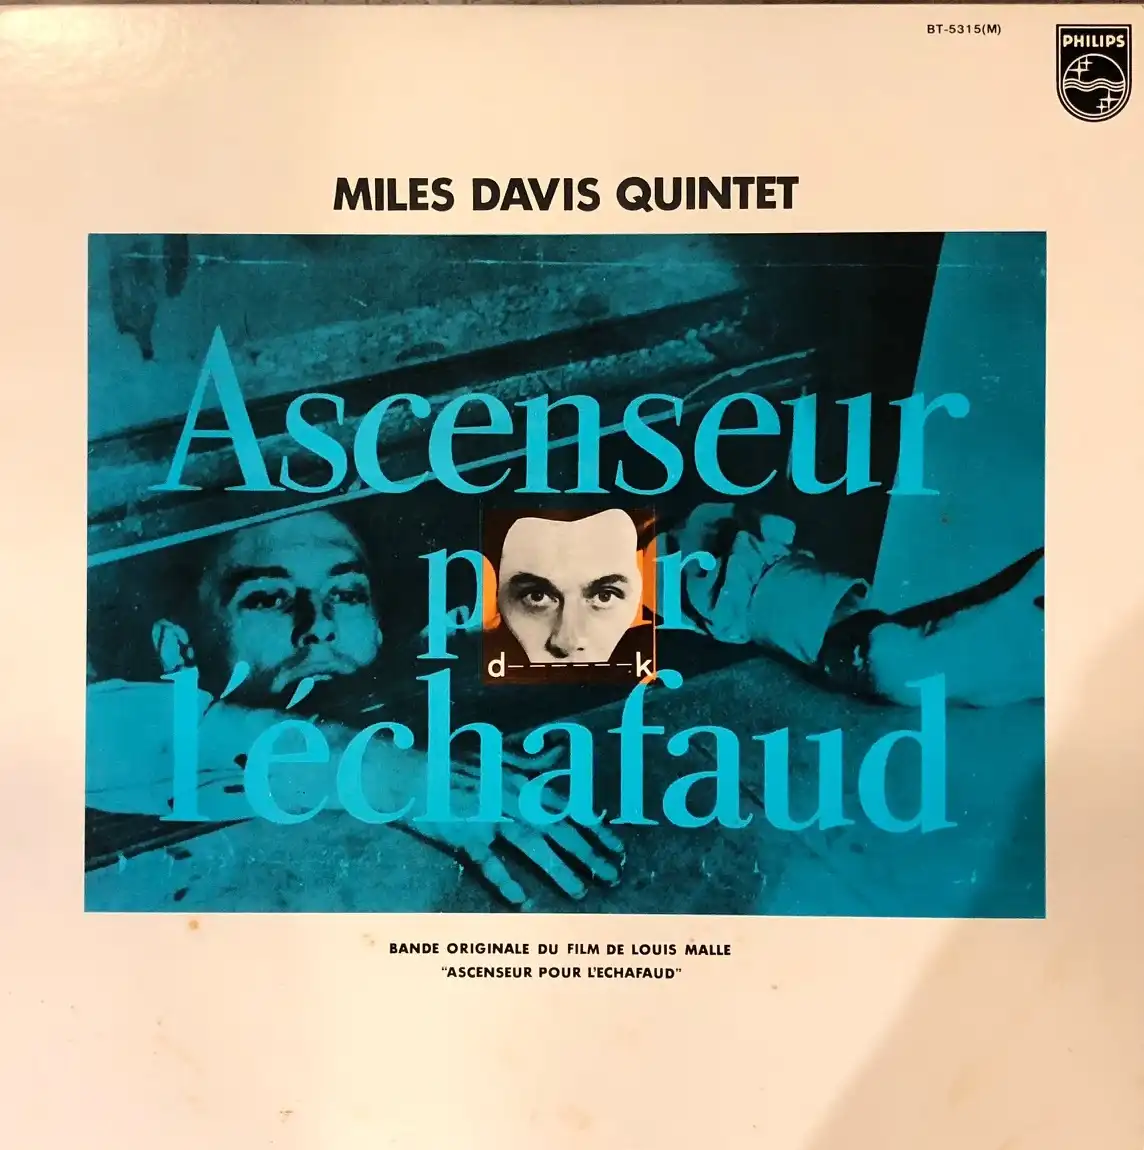 MILES DAVIS QUINTET / ASCENSEUR POUR L'ECHAFAUD